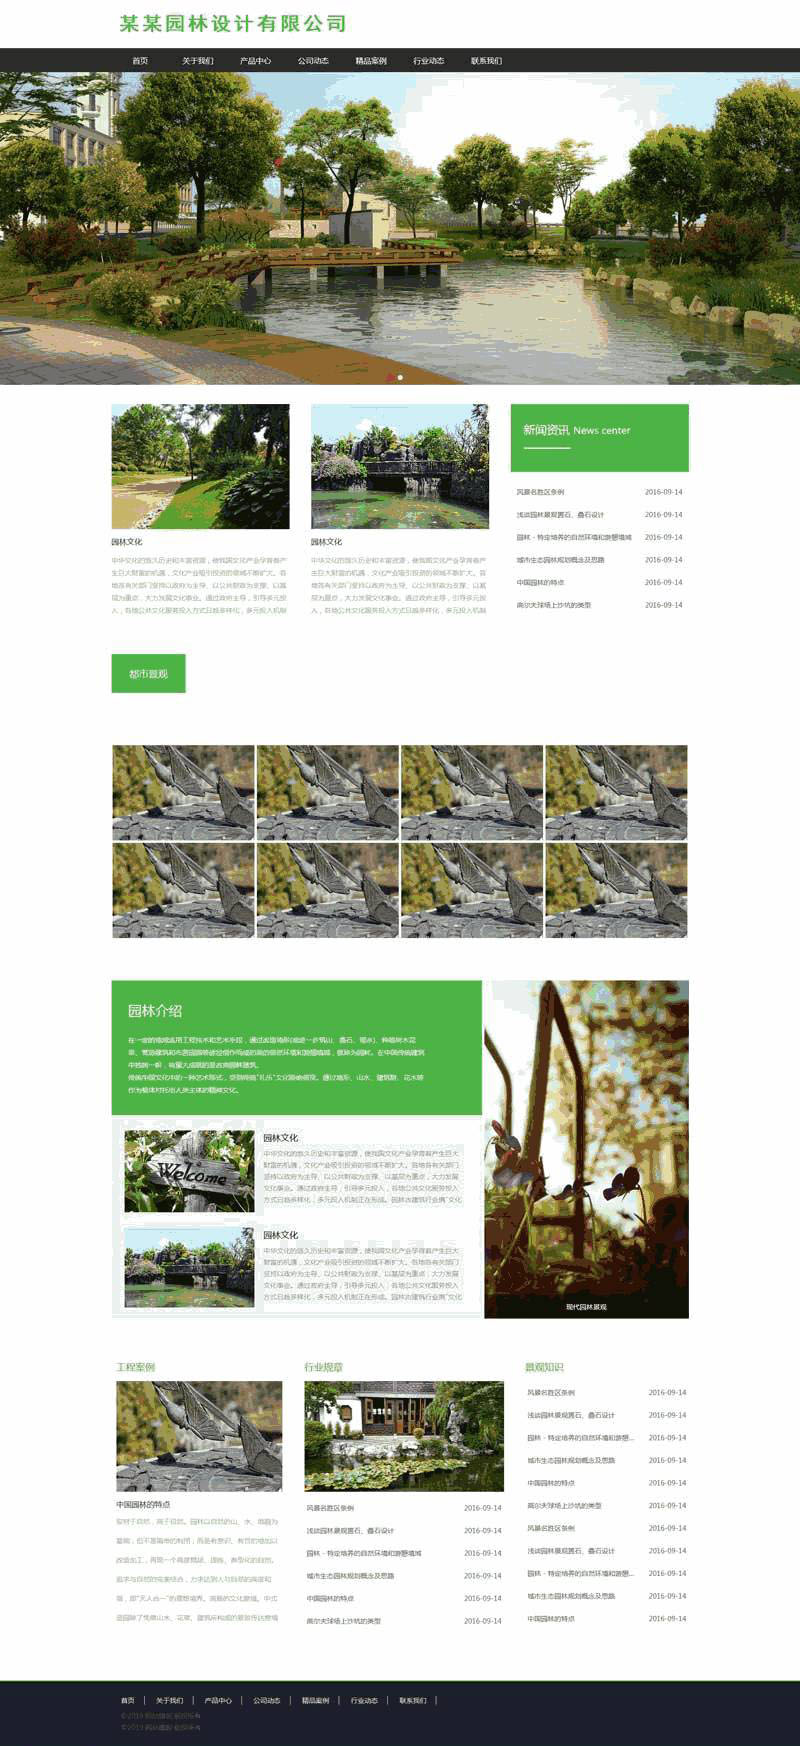 绿色园林景观设计公司网站含手机站WordPress模板下载演示图